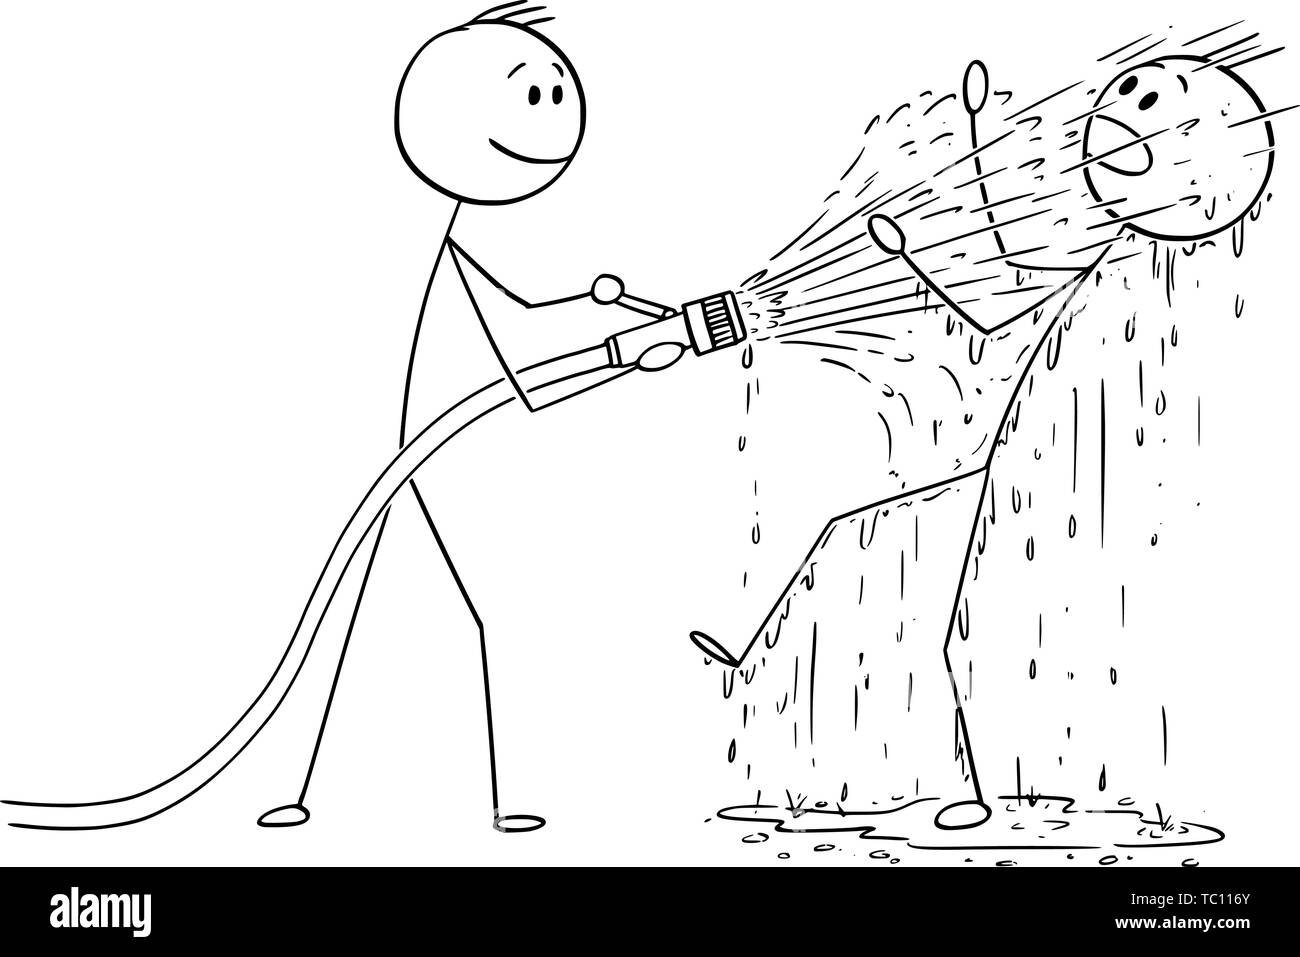 Vektor cartoon Strichmännchen Zeichnen konzeptionelle Darstellung der Mann oder Geschäftsmann Holding grosse Feuer Schlauch und Schießen Wasser auf einen anderen Mann, der komplett nass ist. Stock Vektor